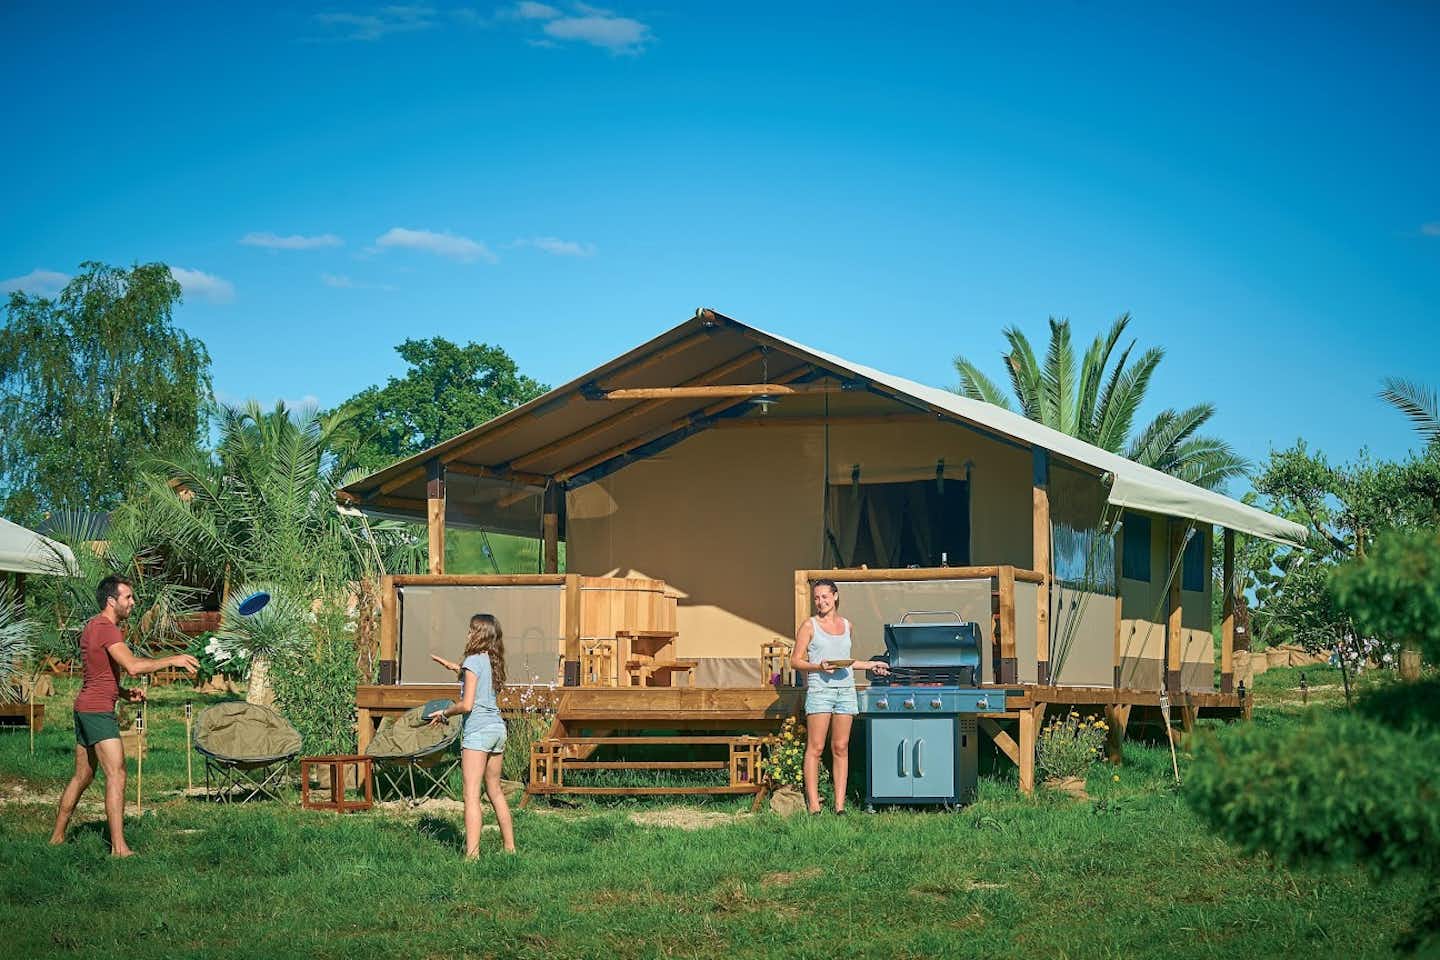 Flower Camping Les Vertes Feuilles - Glamping Safarizelt mit überdachter Veranda und davor spielenden Campern